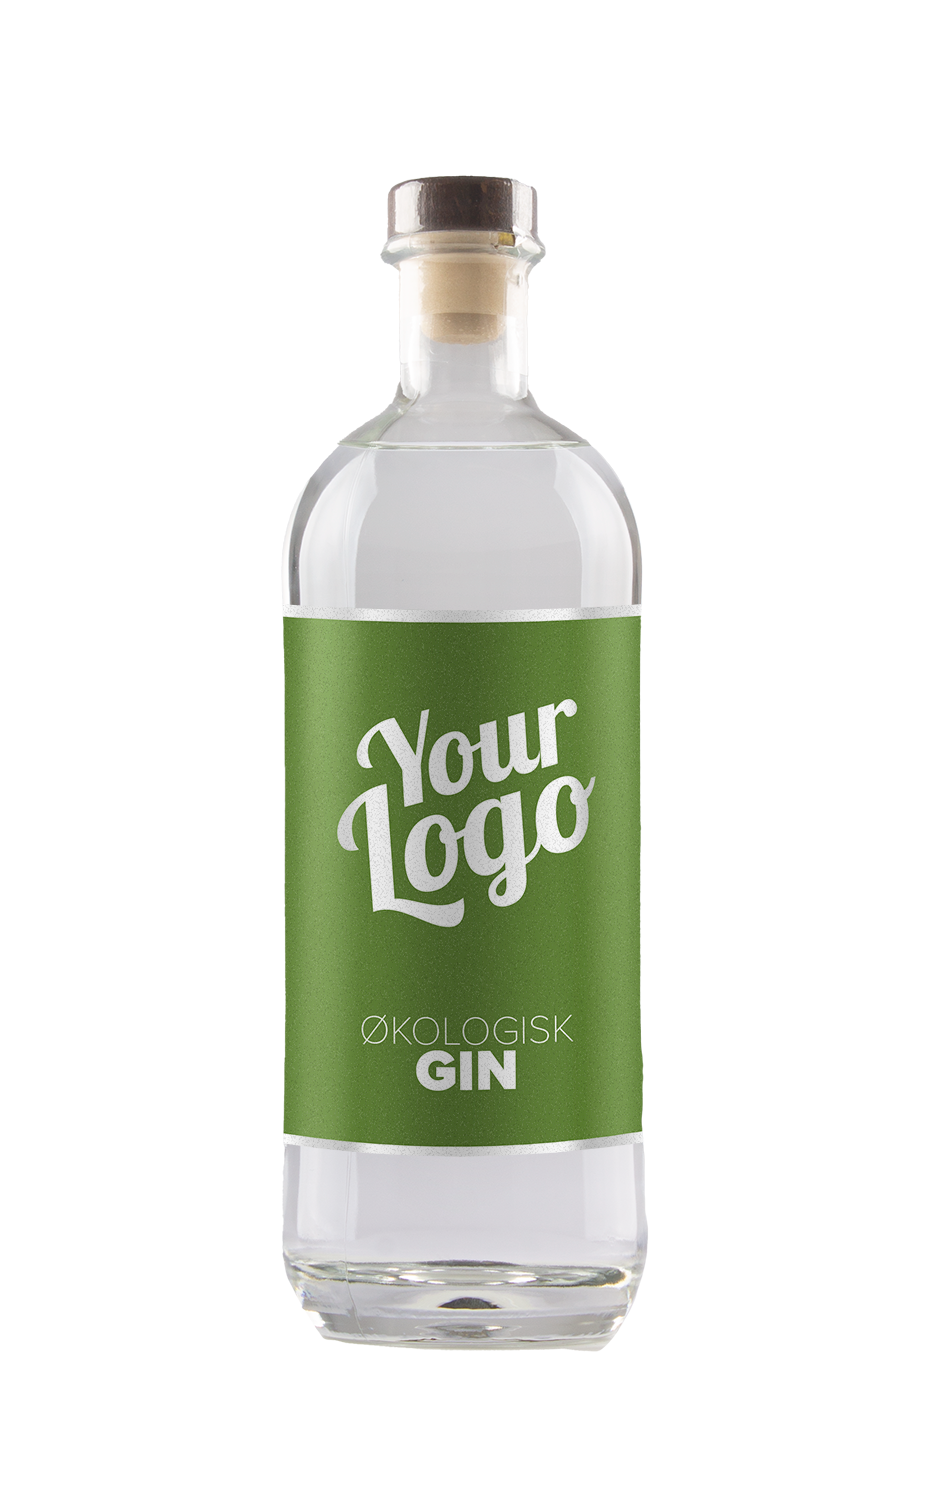 Økologisk London Dry Gin med logo